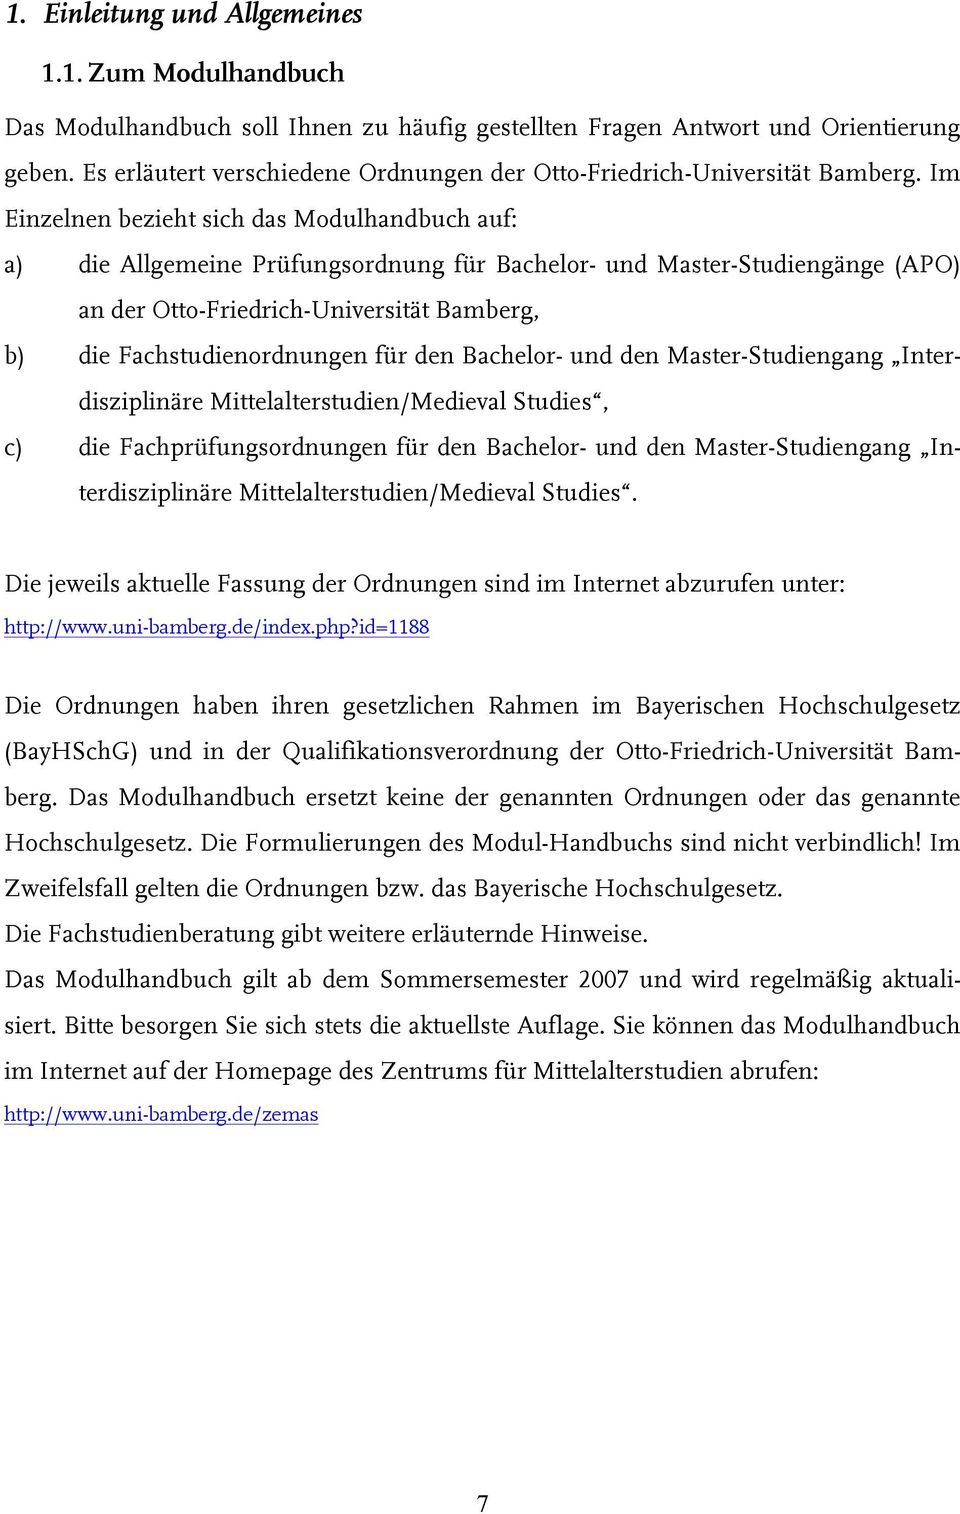 Im Einzelnen bezieht sich das Modulhandbuch auf: a) die Allgemeine Prüfungsordnung für Bachelor- und Master-Studiengänge (APO) an der Otto-Friedrich-Universität Bamberg, b) die Fachstudienordnungen